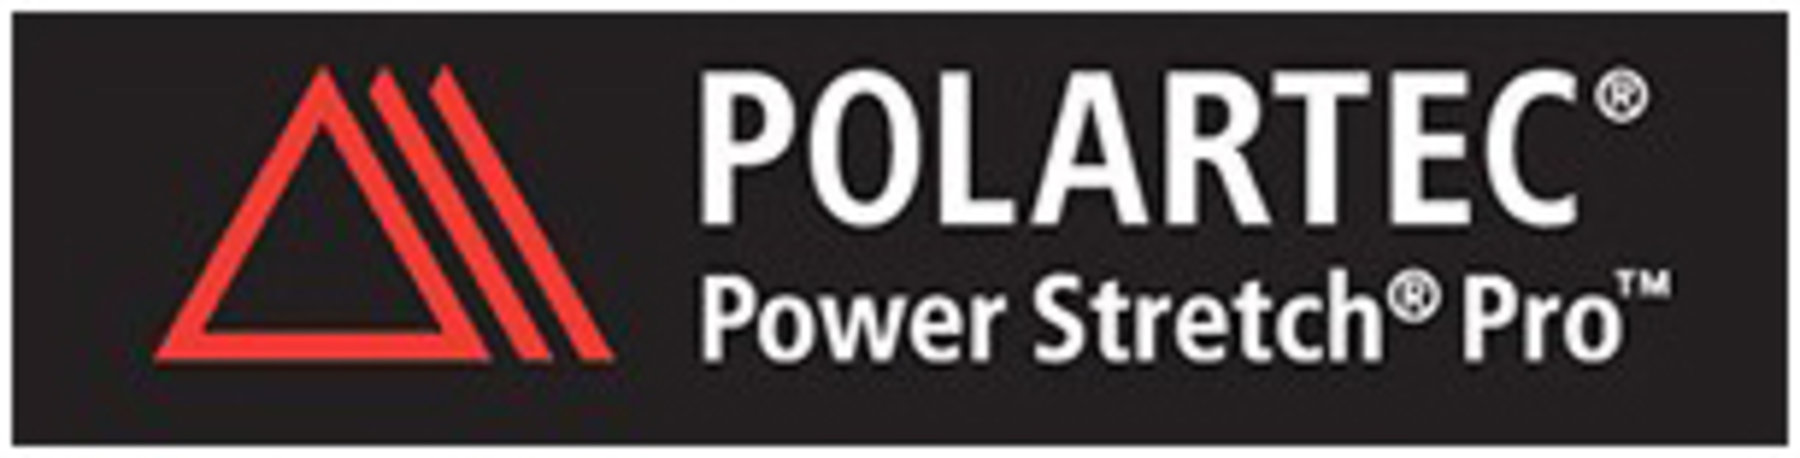 Polartec Power Stretch (Pro) | Antrekk